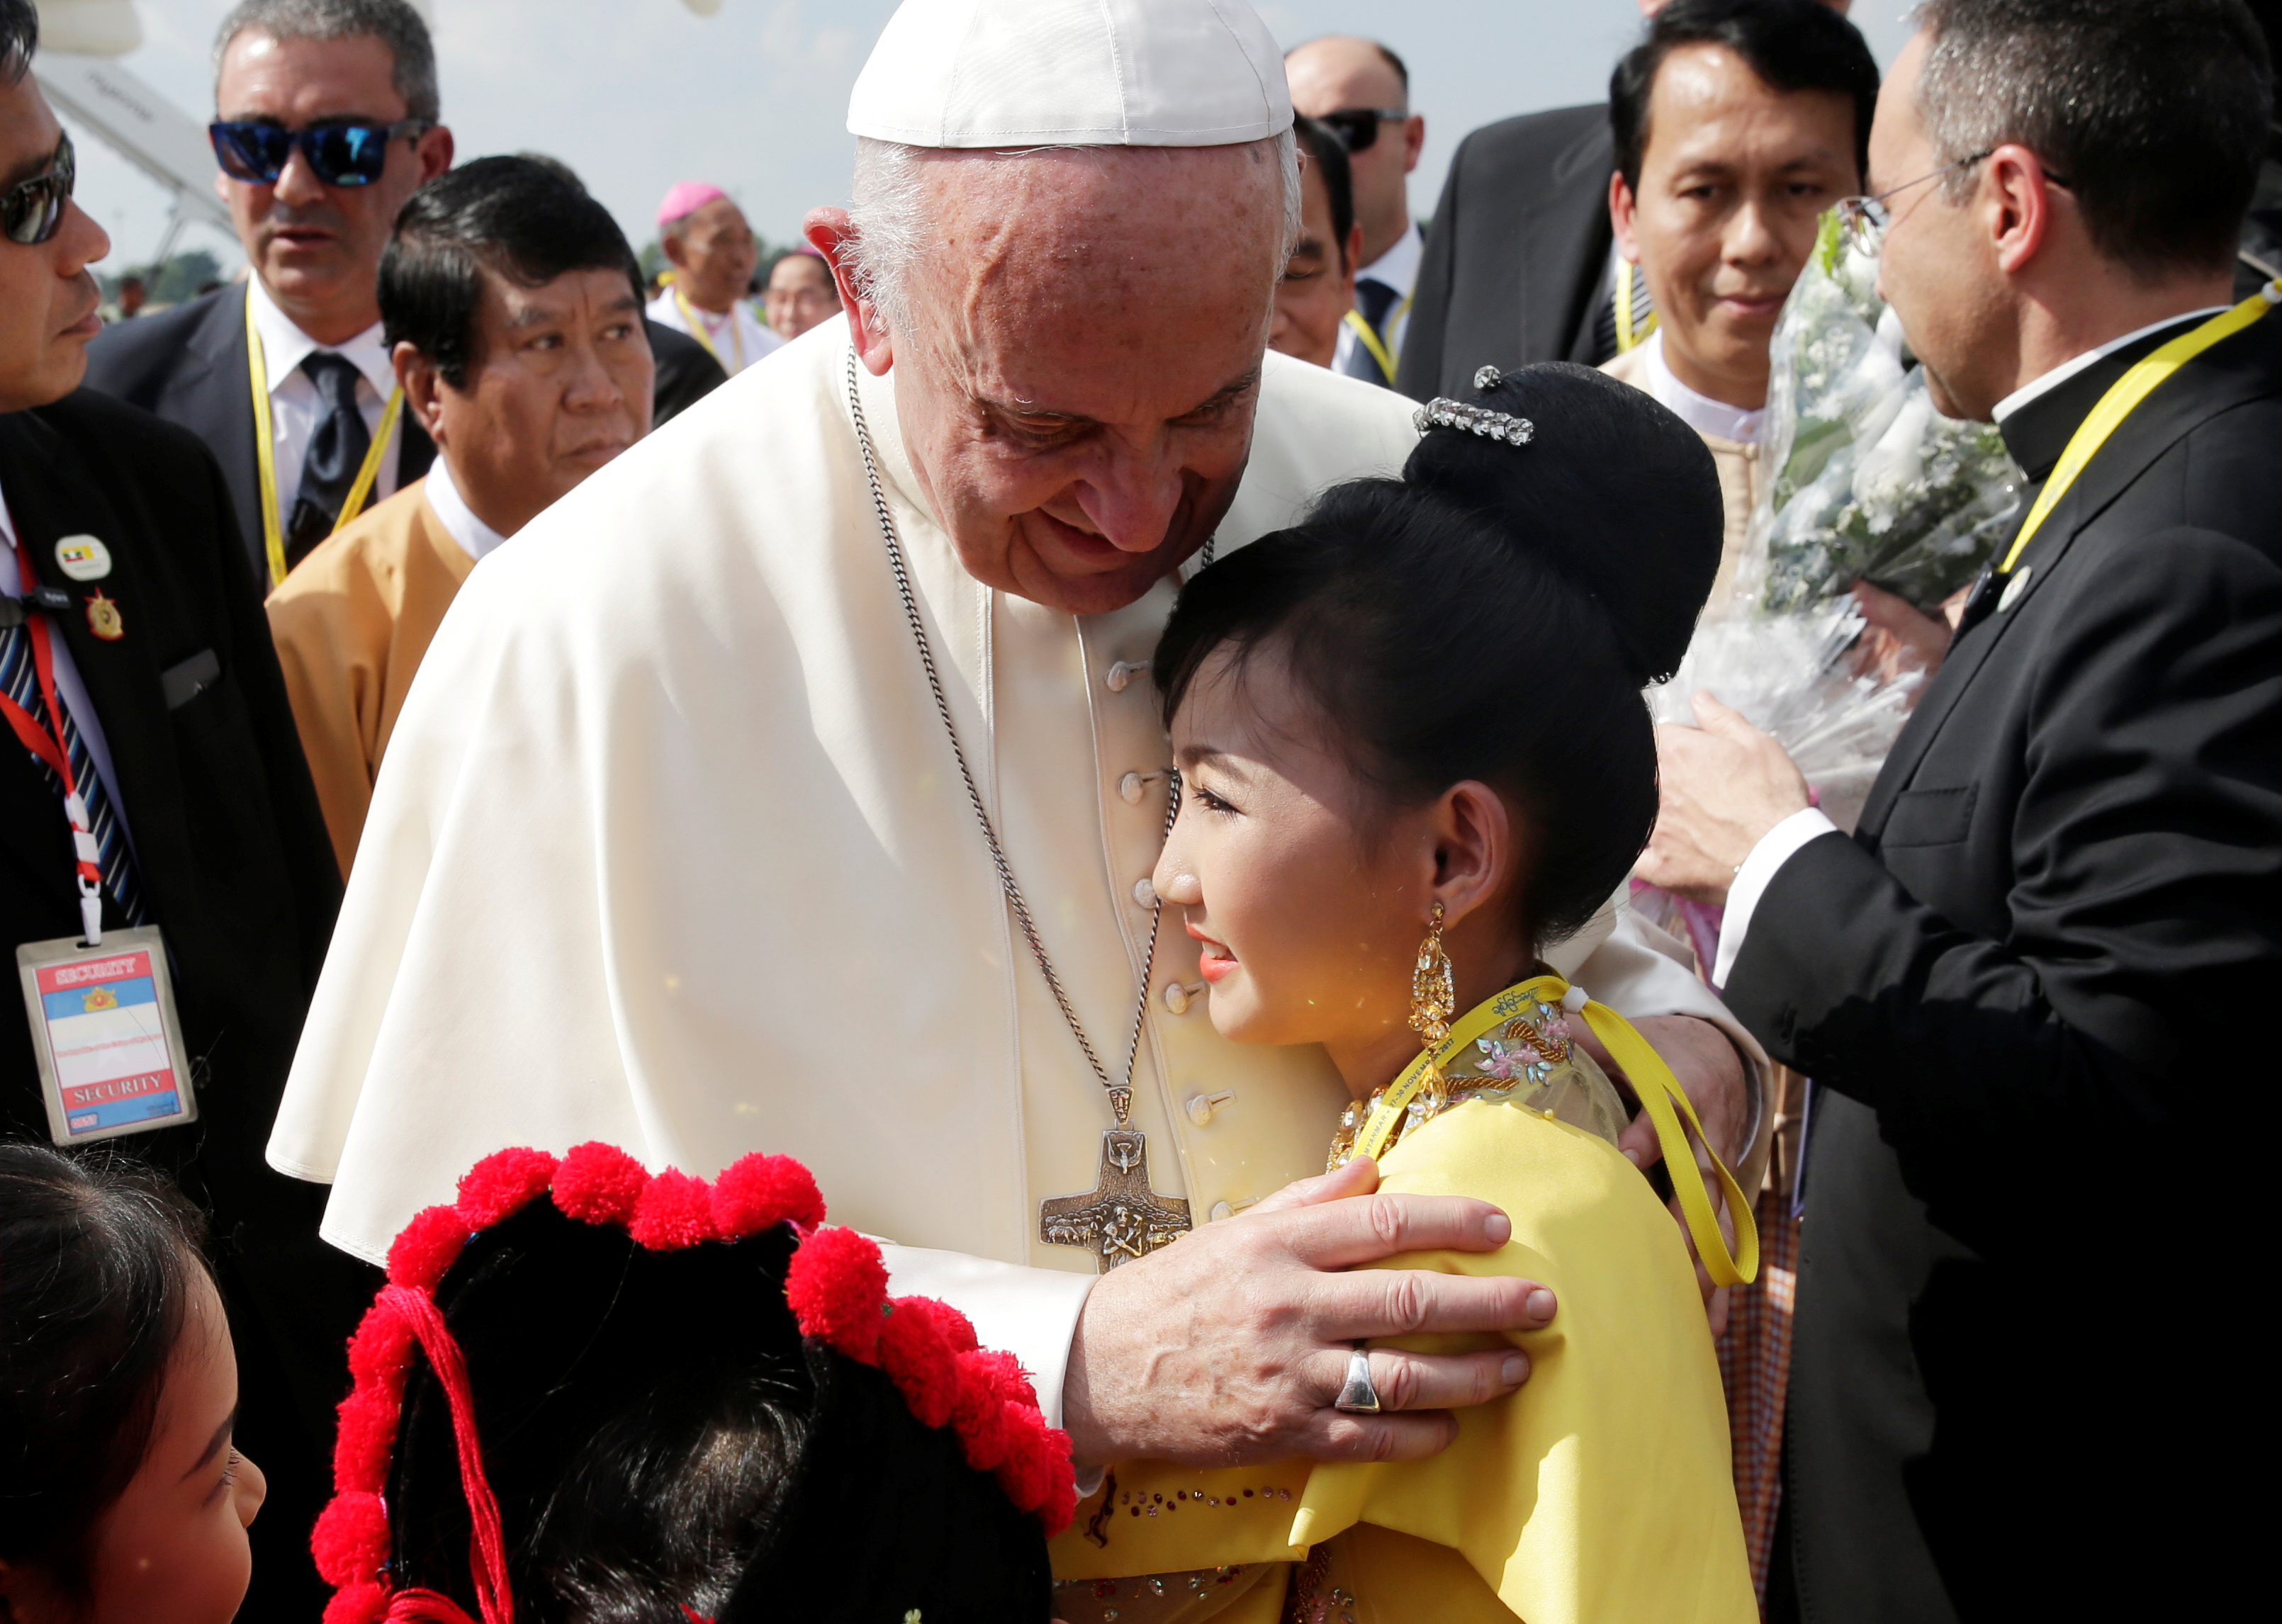  البابا فرانسيس يحتضن الأطفال 